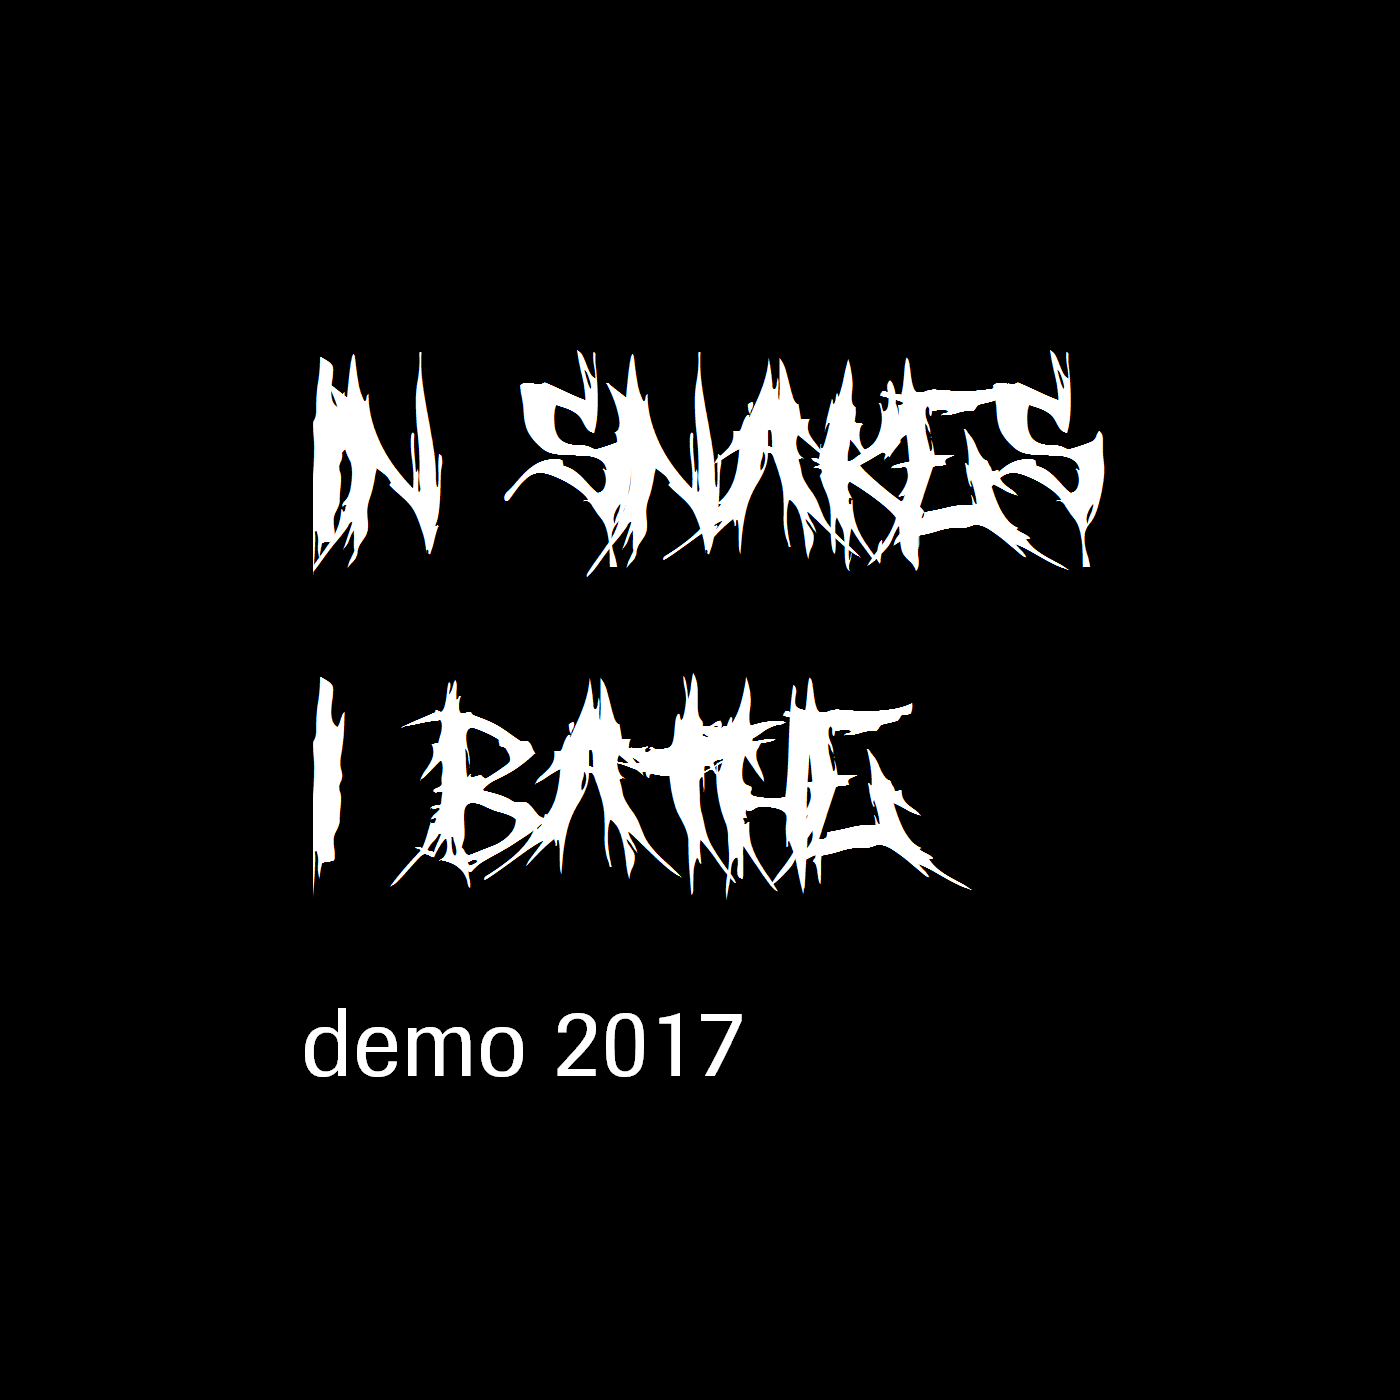 IN SNAKES I BATHE - Demo 2017 cover 